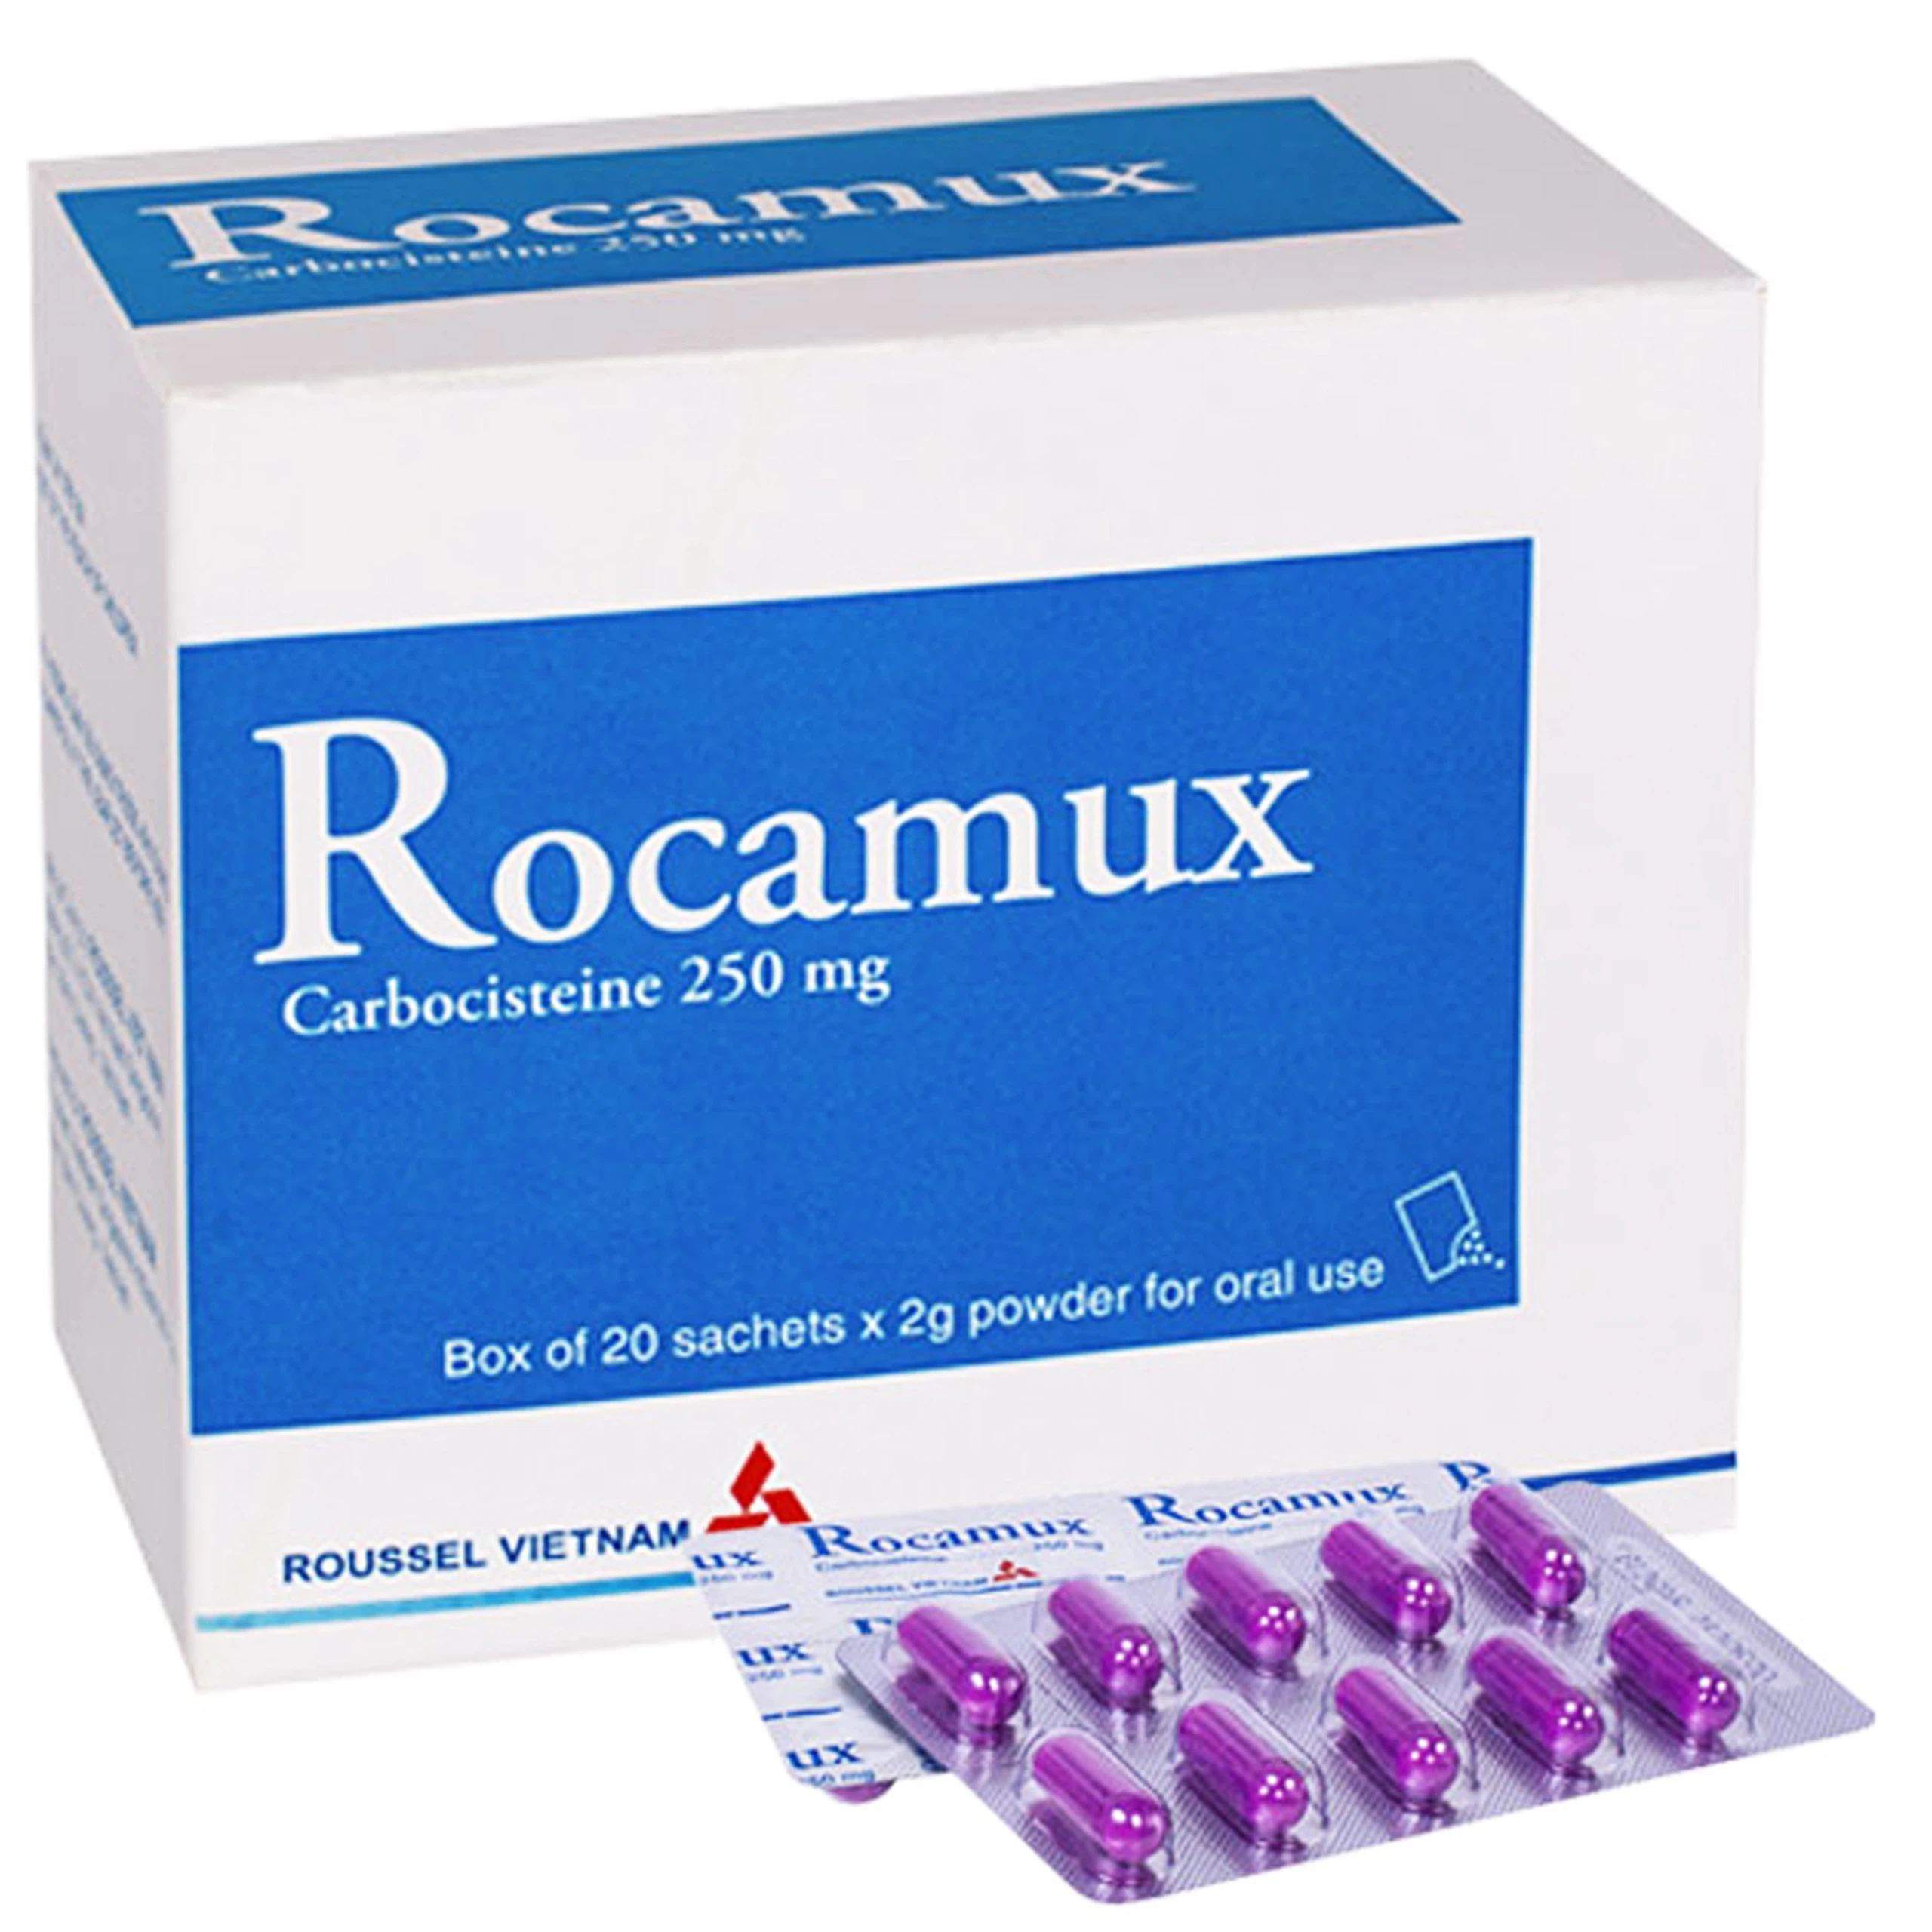 Thuốc bột uống Rocamux Roussel điều trị viêm phế quản, viêm mũi họng (20 gói x 2g) 